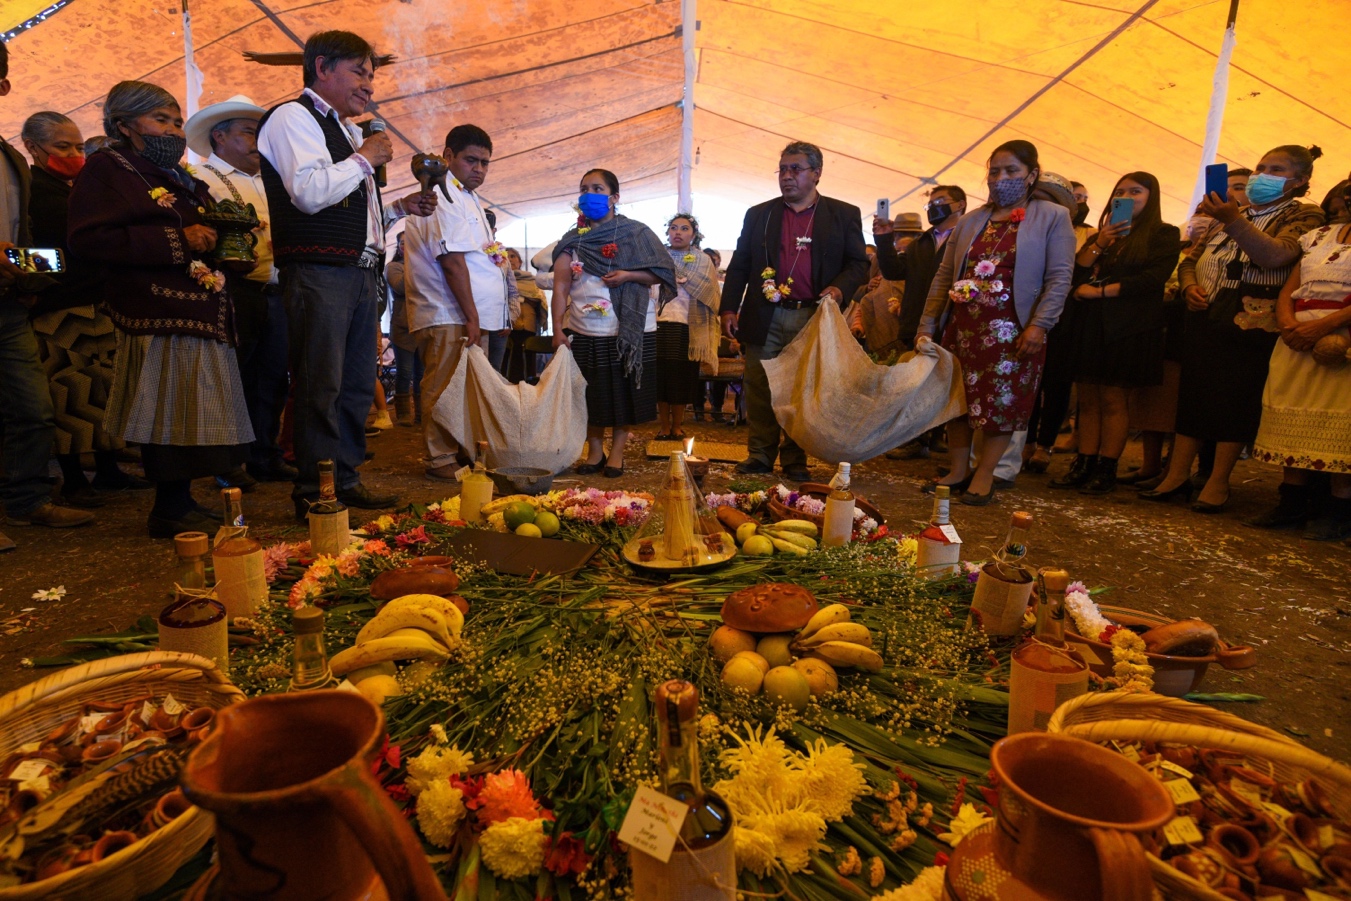 Habrá bodas indígenas con rituales ancestrales en Zacatepec  